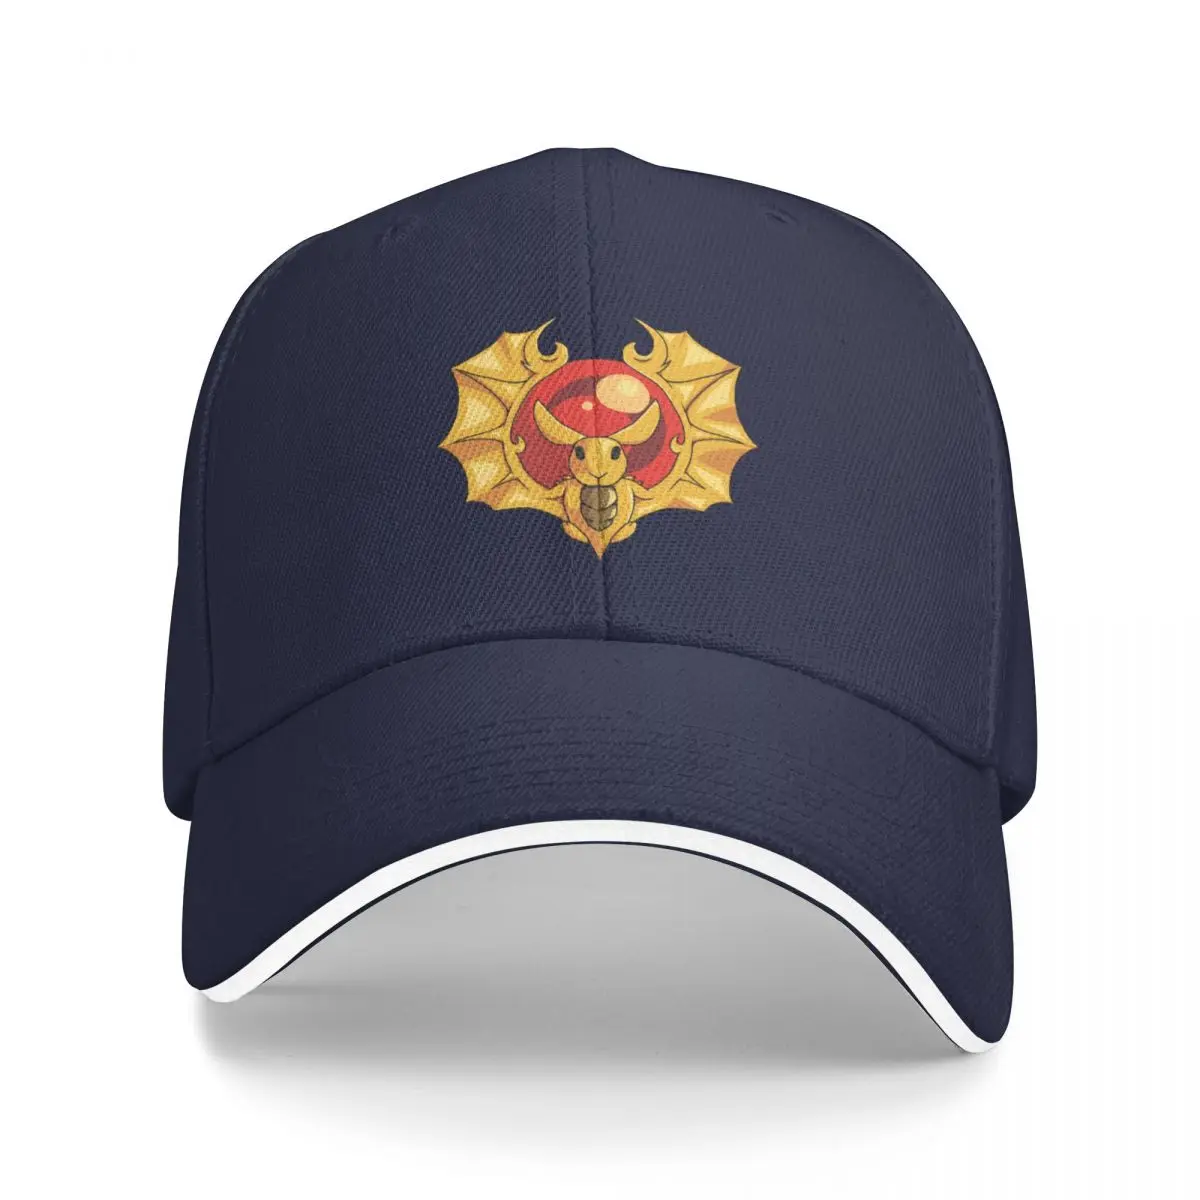 Yeni Tavşan AmuletBaseball Kap kamyon şoförü şapkaları Askeri Taktik Kap Vahşi yuvarlak şapka güneş şapkası Erkek Kap Kadın